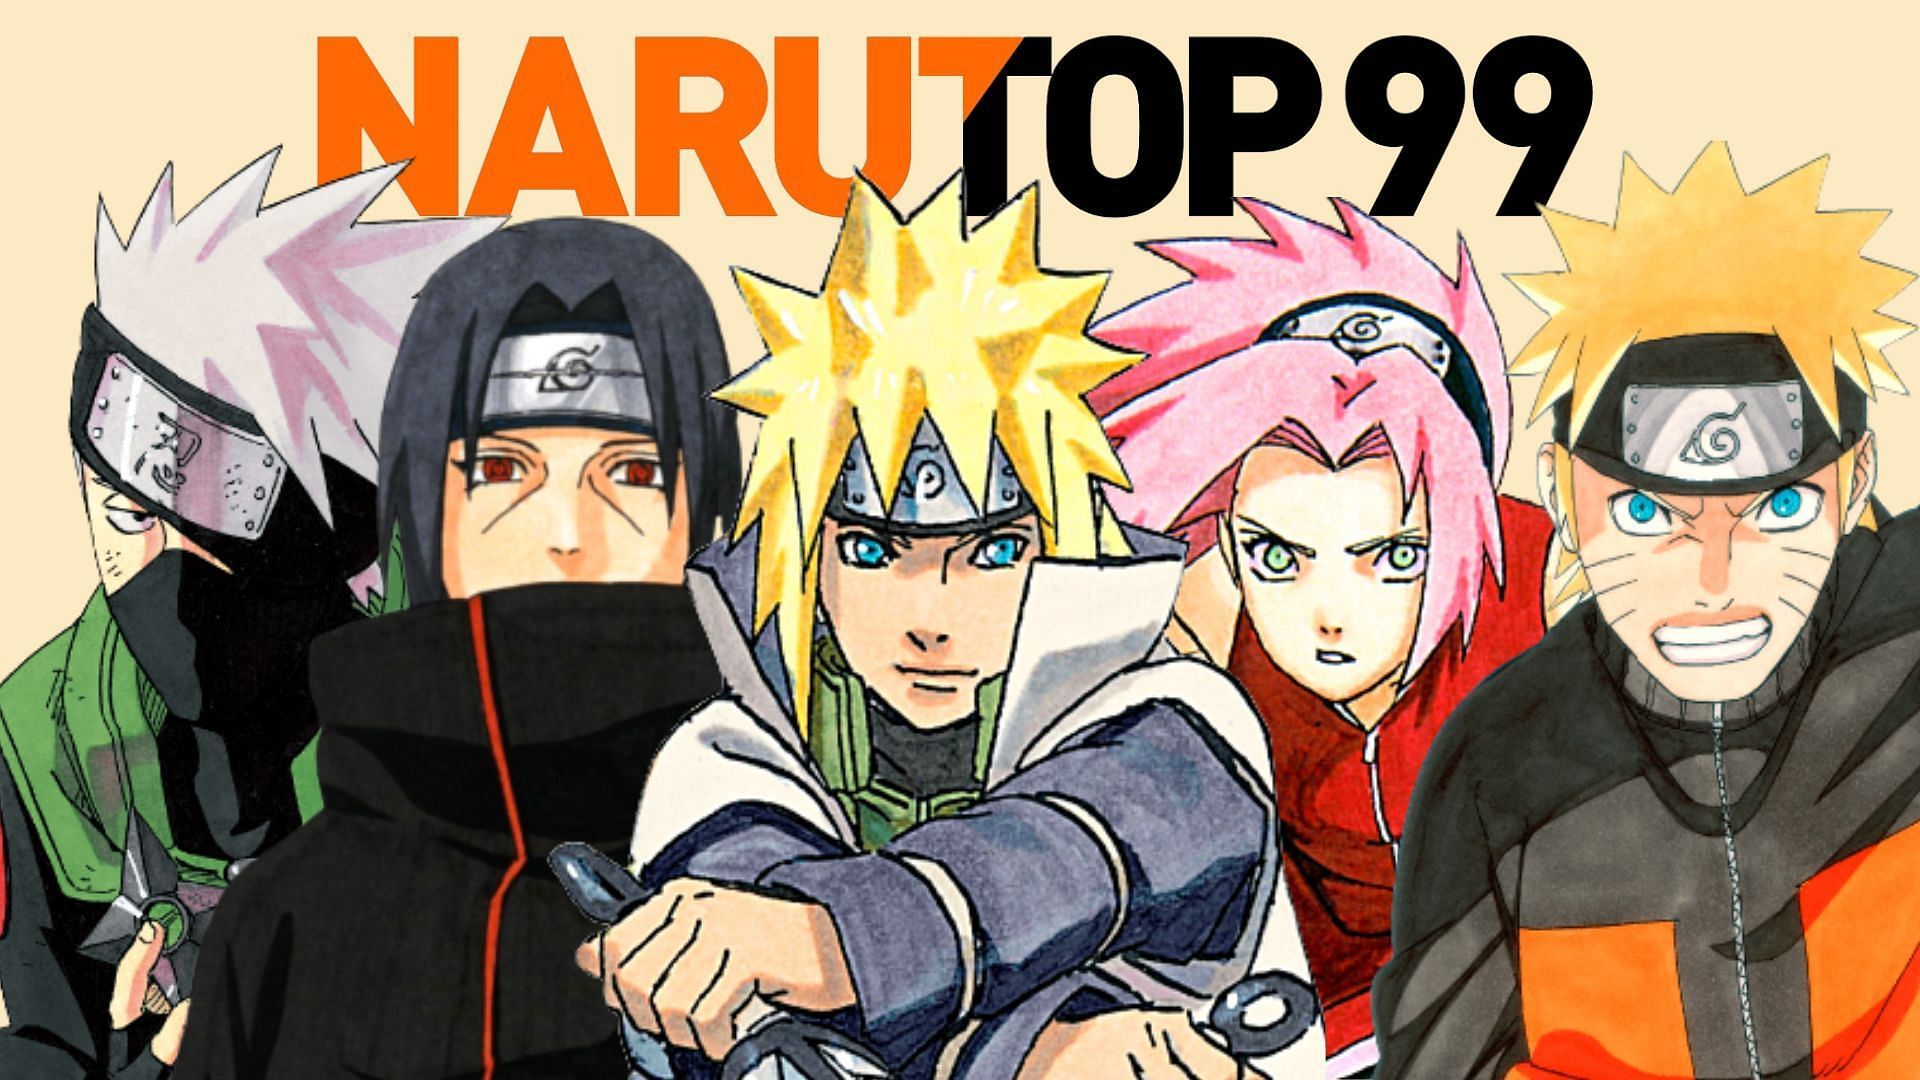 Naruto characters who are surprisingly leading Narutop99 - Pragativadi